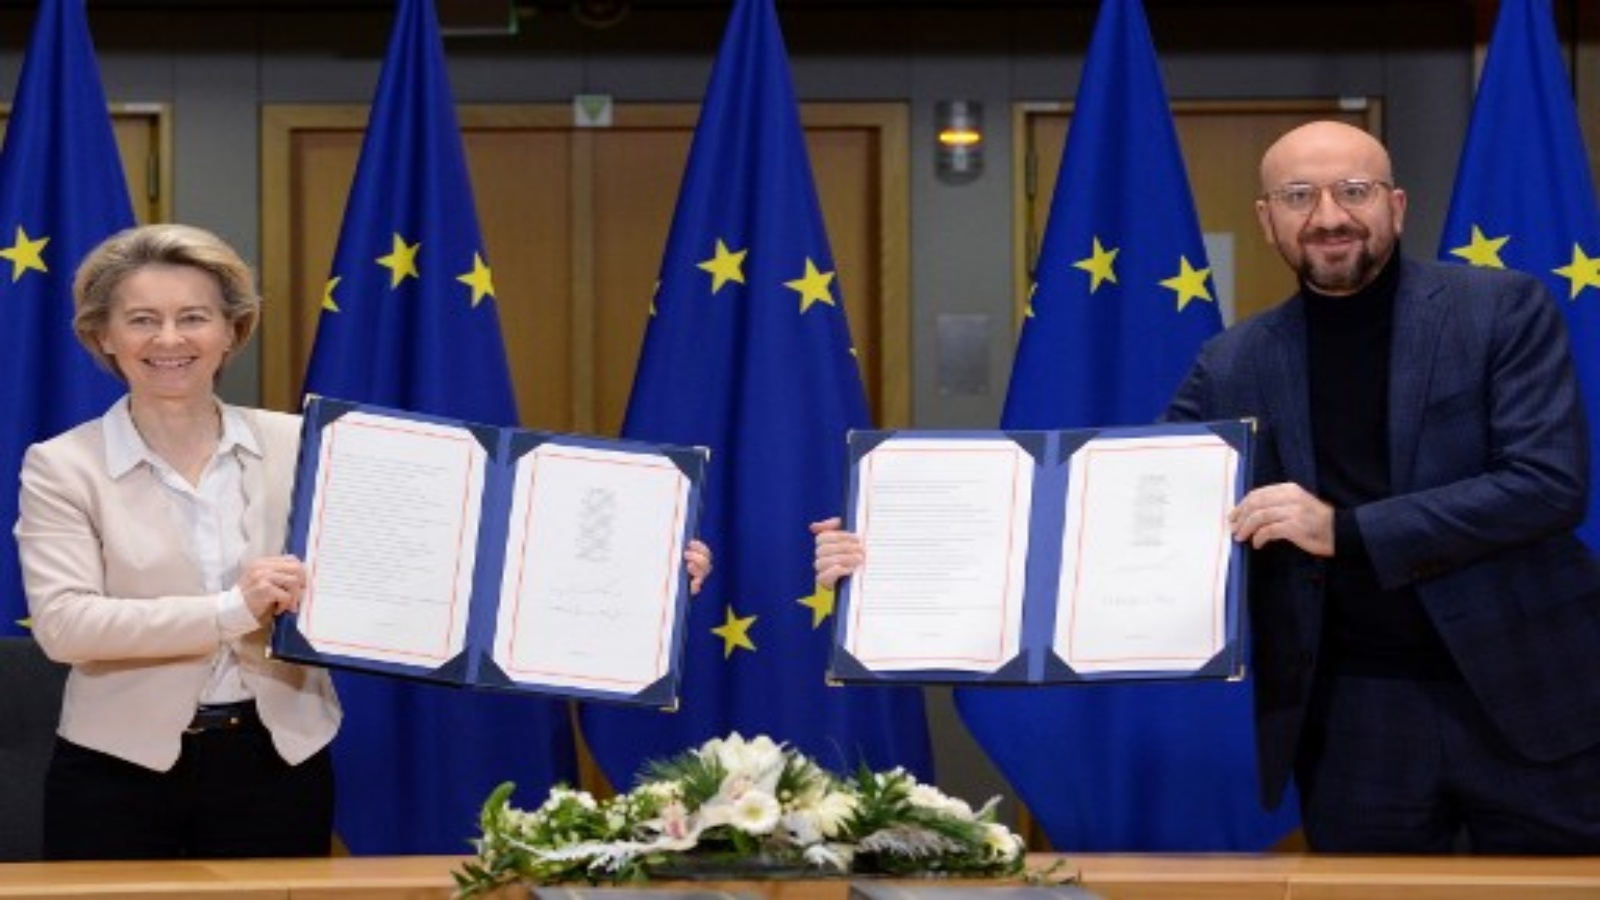 رئيسة المفوضية الأوروبية أورسولا فون دير لاين (يسار) ورئيس المجلس الأوروبي تشارلز ميشيل (يمين) في بروكسل ، في 30 ديسمبر 2020 ، حيث يظهران اتفاقية التجارة الموقعة بشأن خروج بريطانيا من الاتحاد الأوروبي المقرر دخولها حيز التنفيذ في 1 يناير 2021